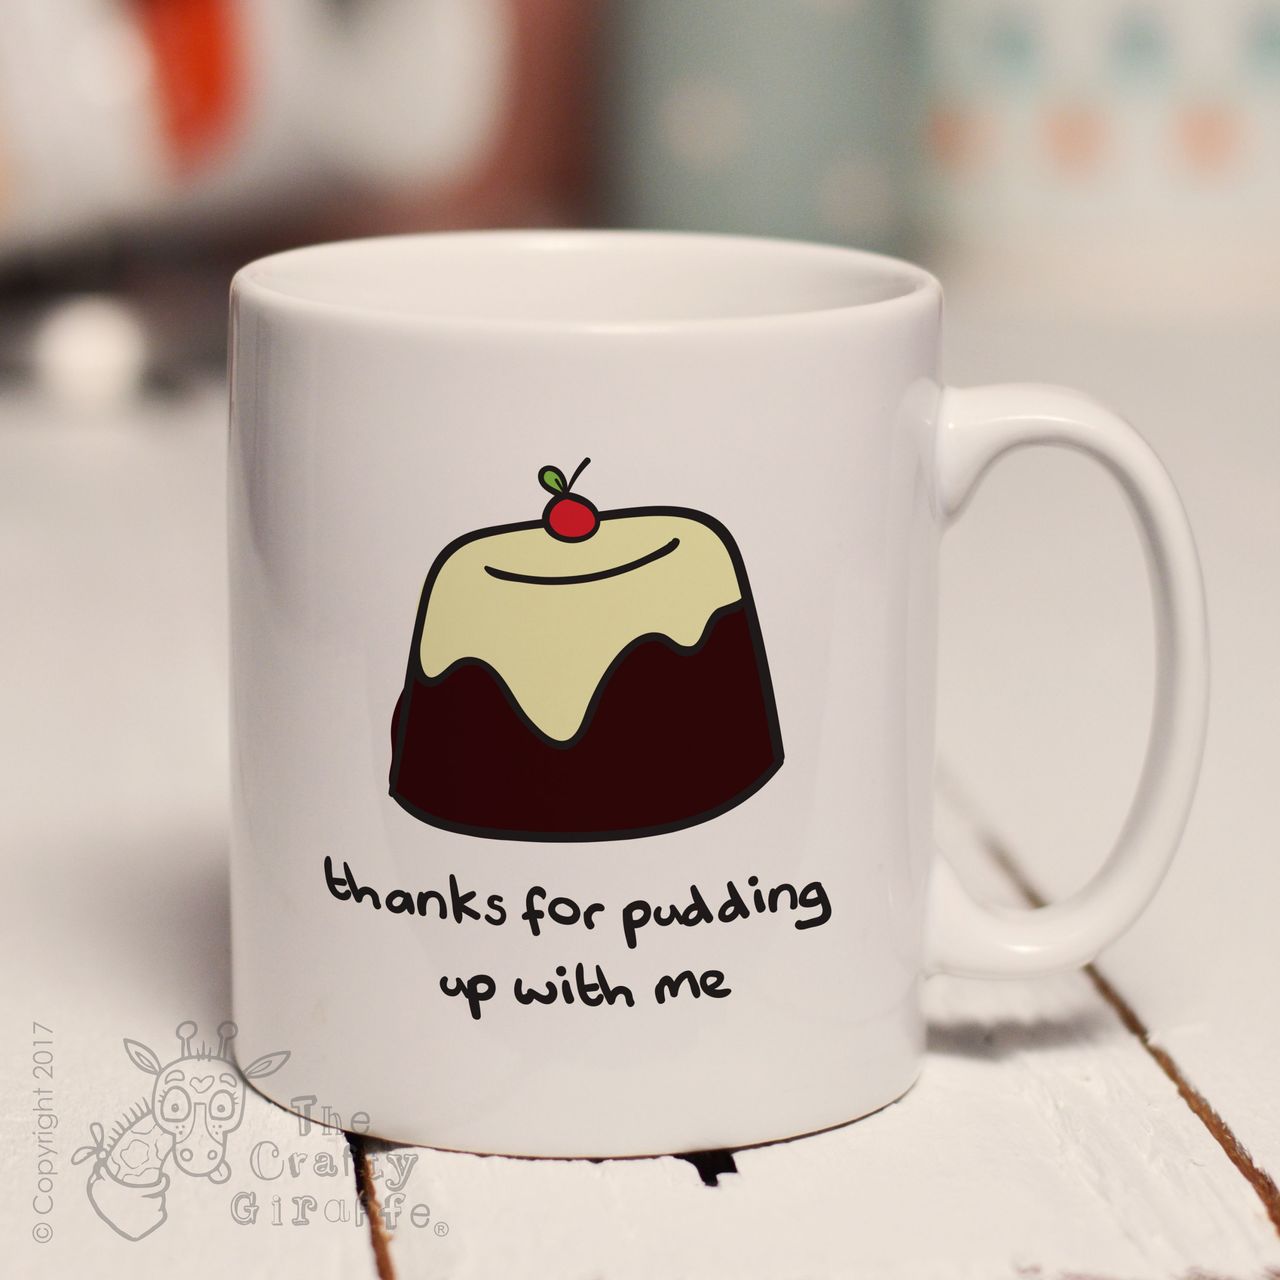 Thanks for pudding up with me mug